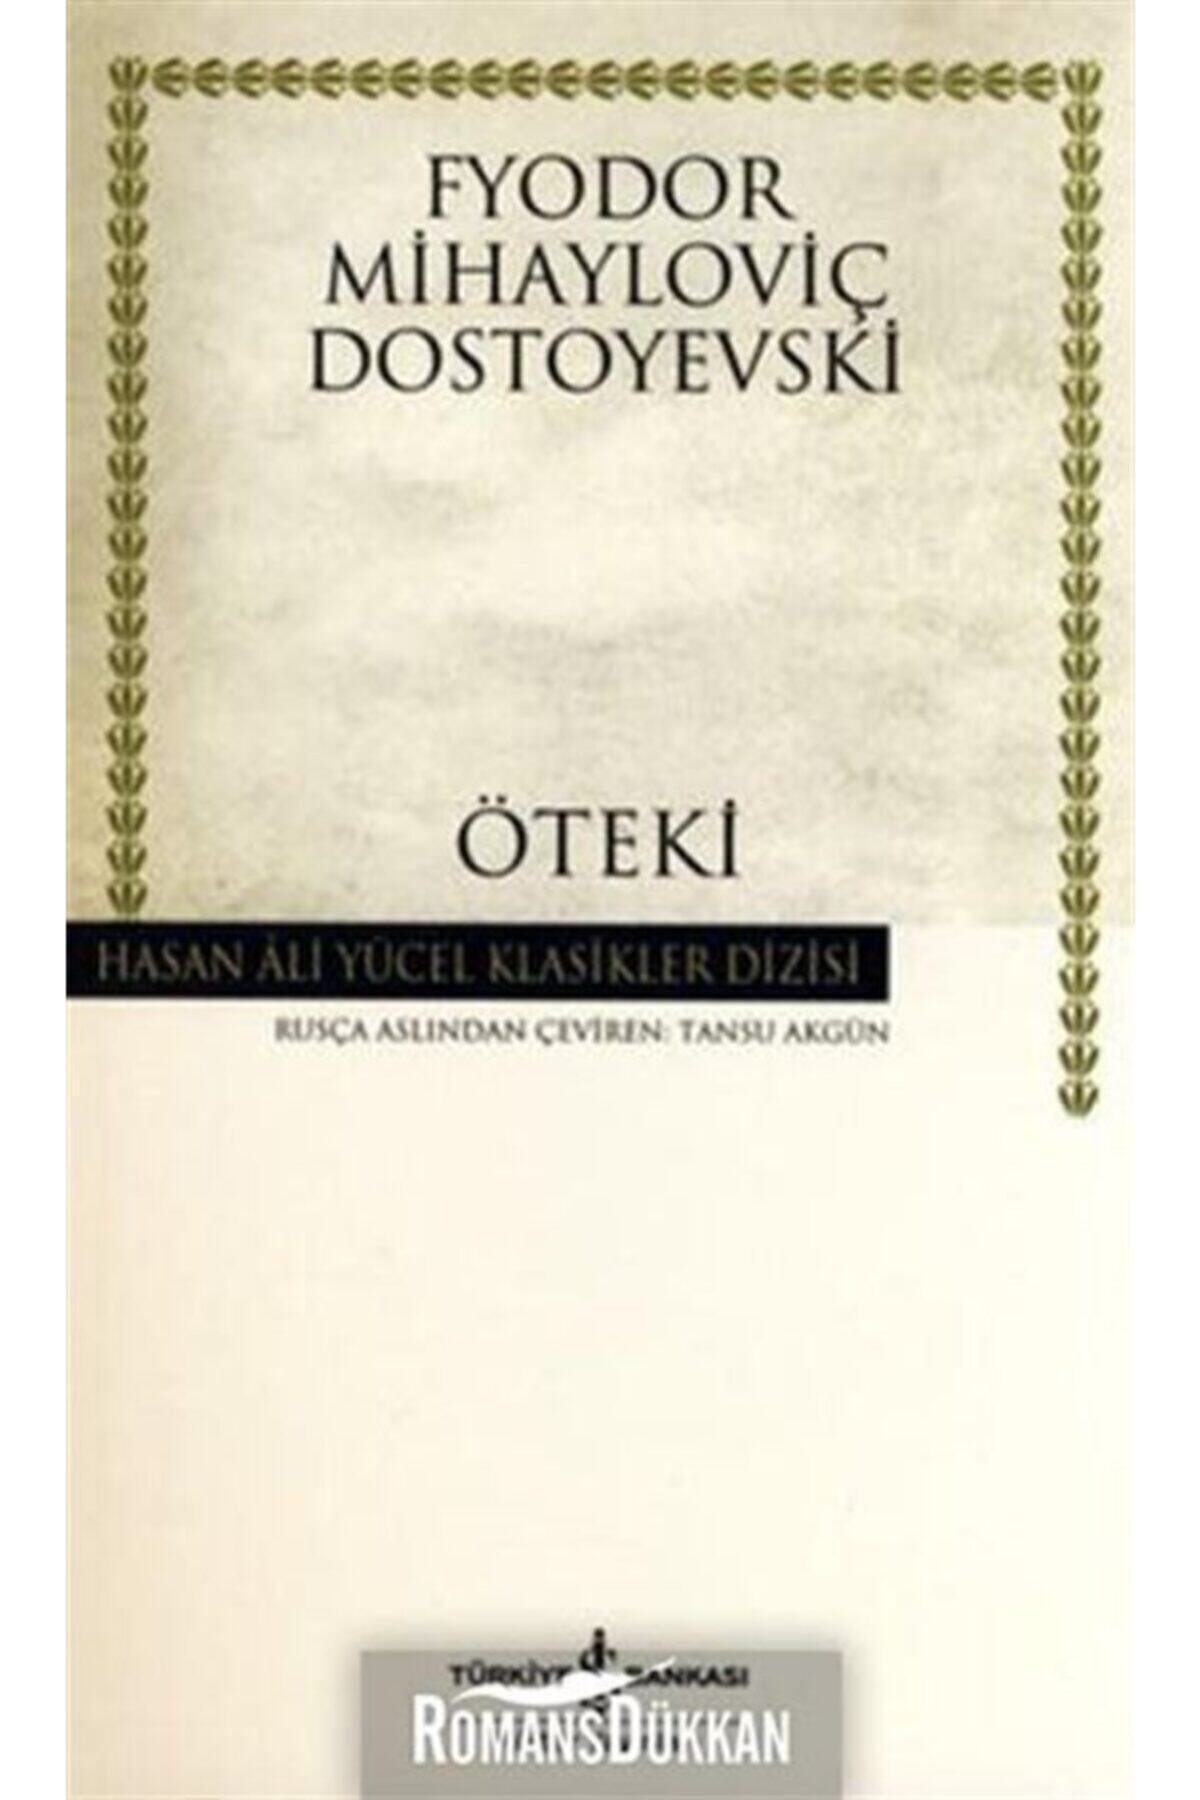 İş Bankası Kültür Yayınları Öteki- Fyodor Mihayloviç Dostoyevski